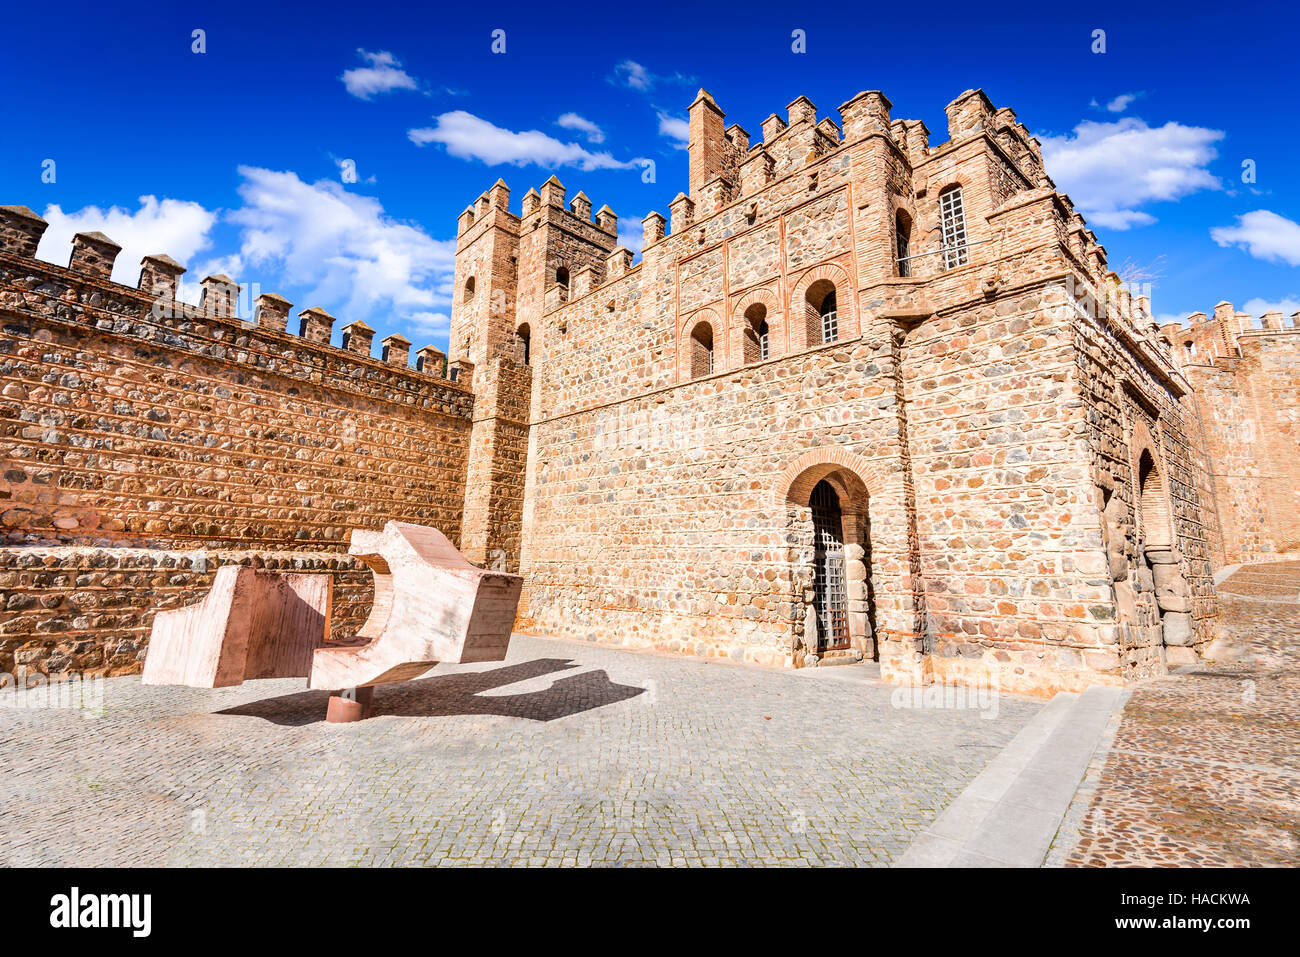 Toledo, Espagne. Puerta de Bisagra une porte de ville de ville espagnole médiévale construite par les Arabes au 10e siècle. Castille la Manche Banque D'Images